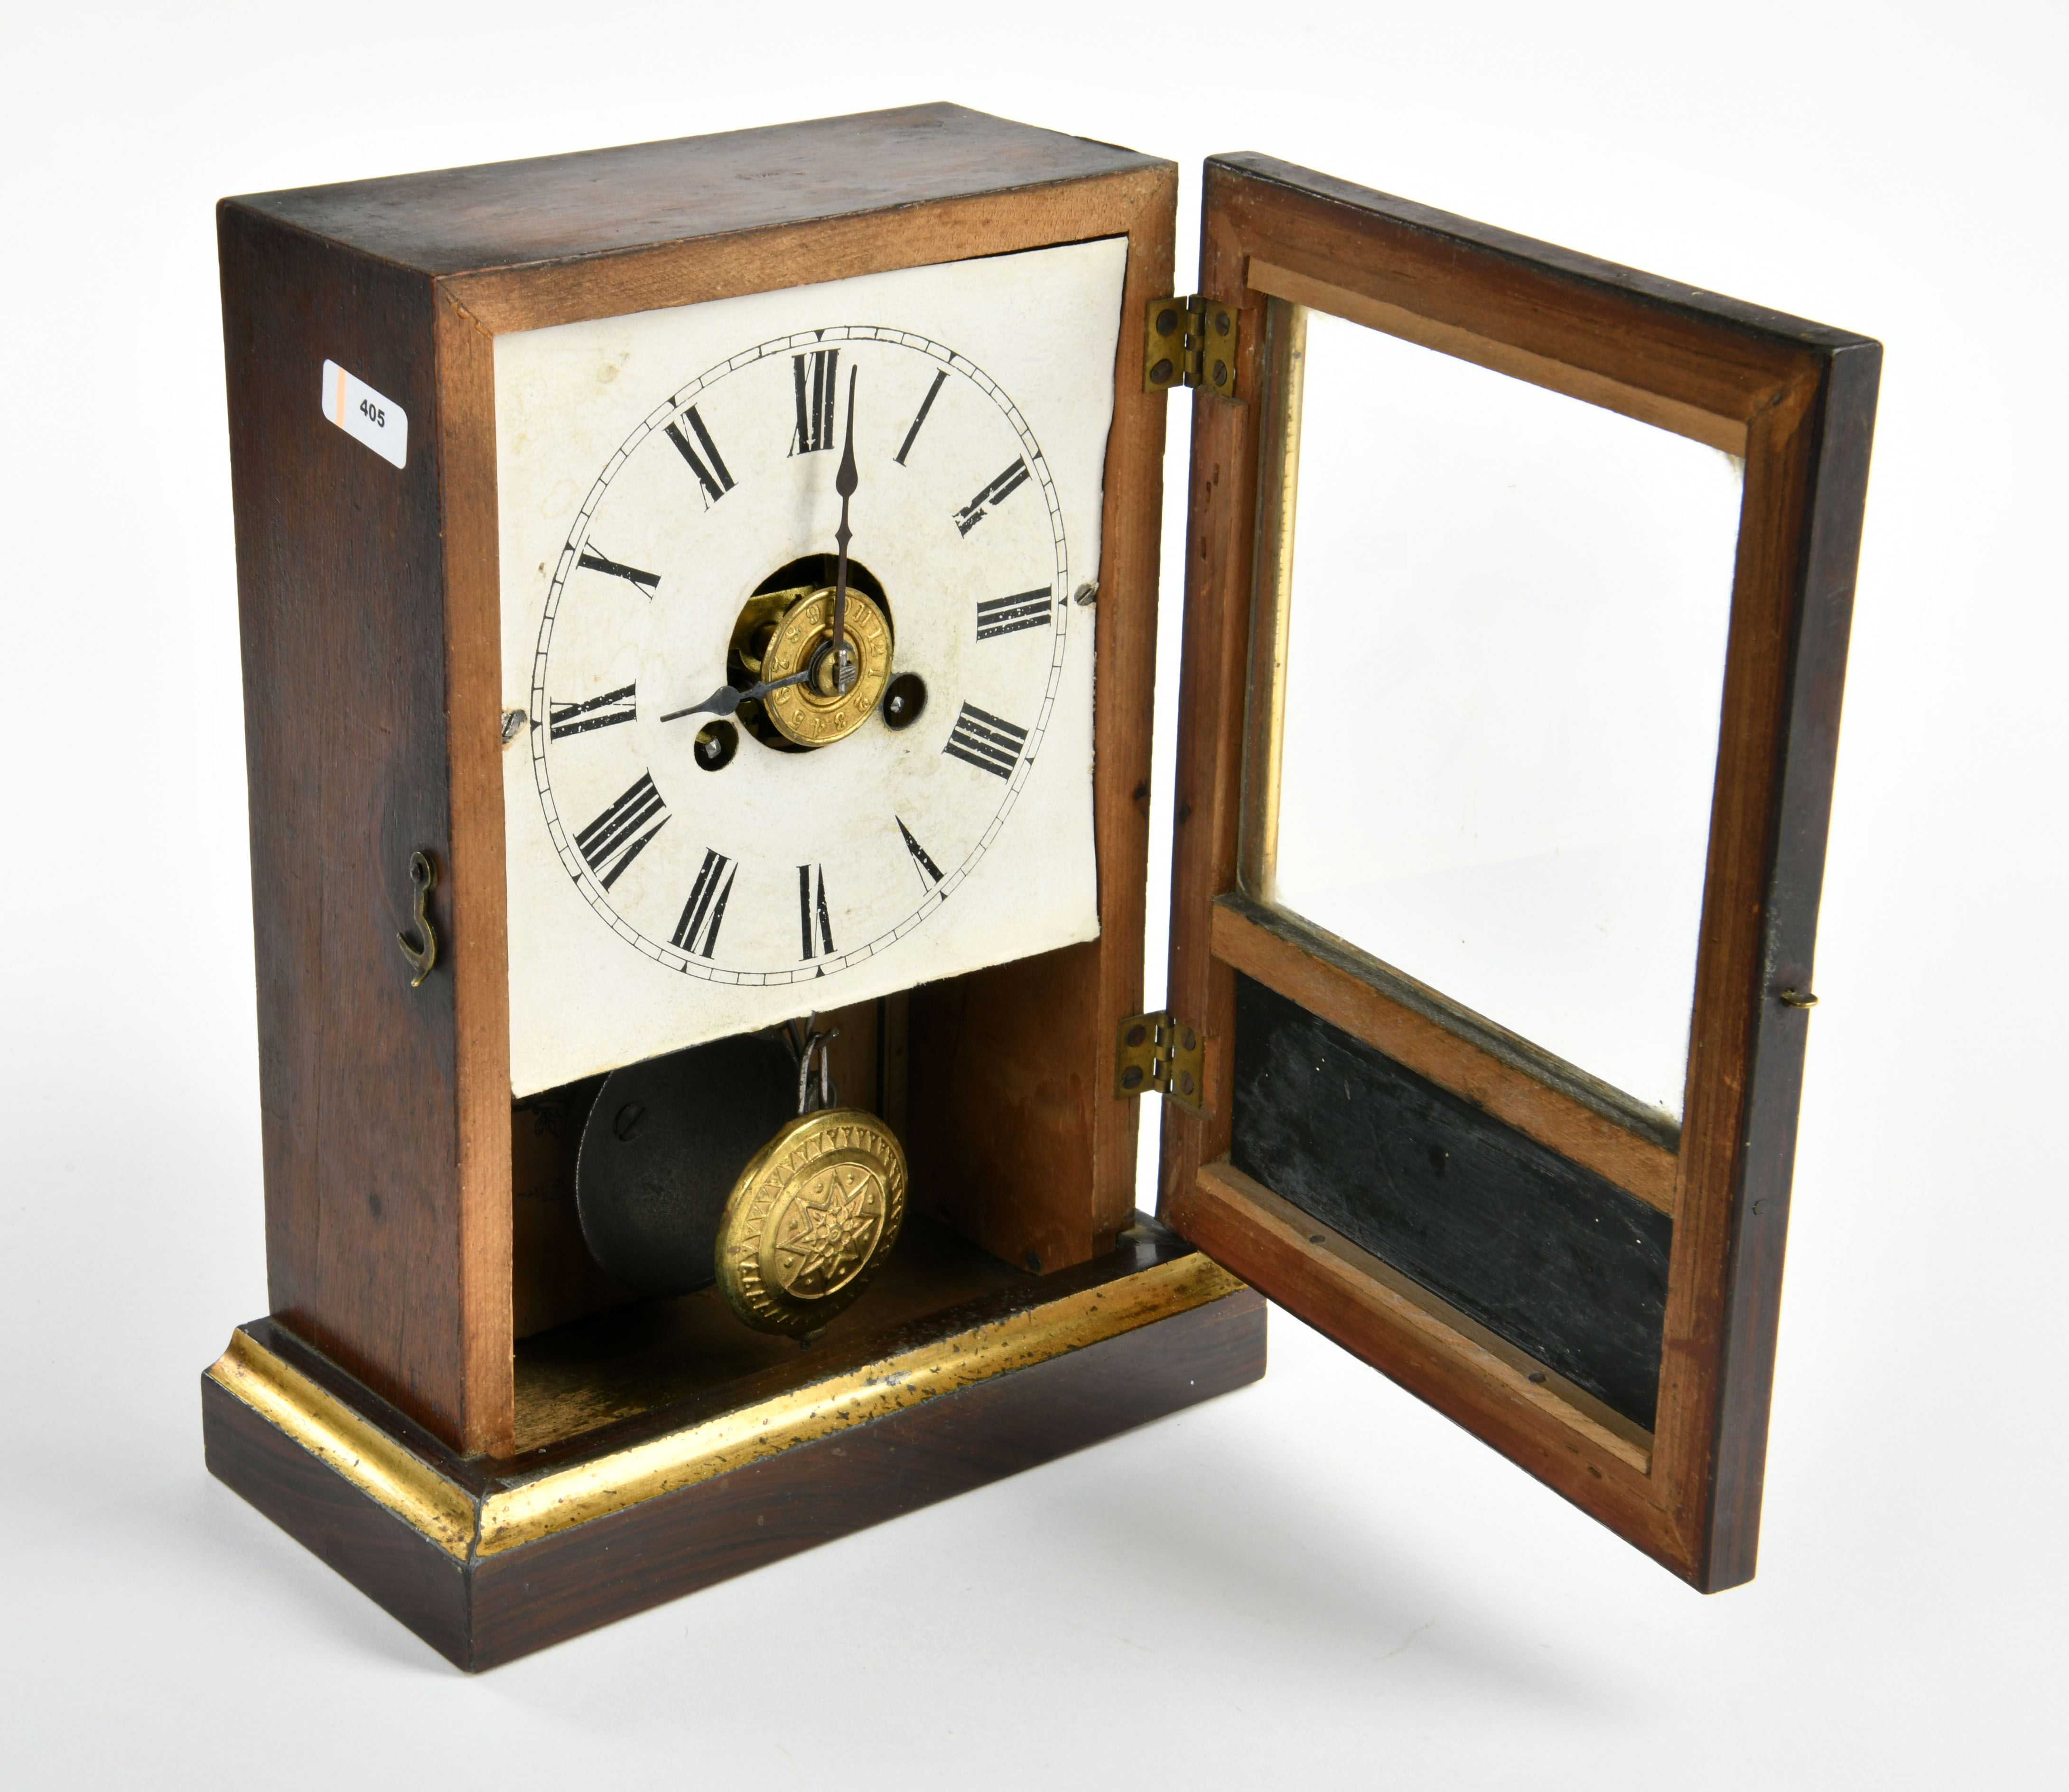 Pluribus Unum grandfather's clock around 1870, USA, 23,5x18x9 cm870, traces of age, clockwork, - Image 2 of 2